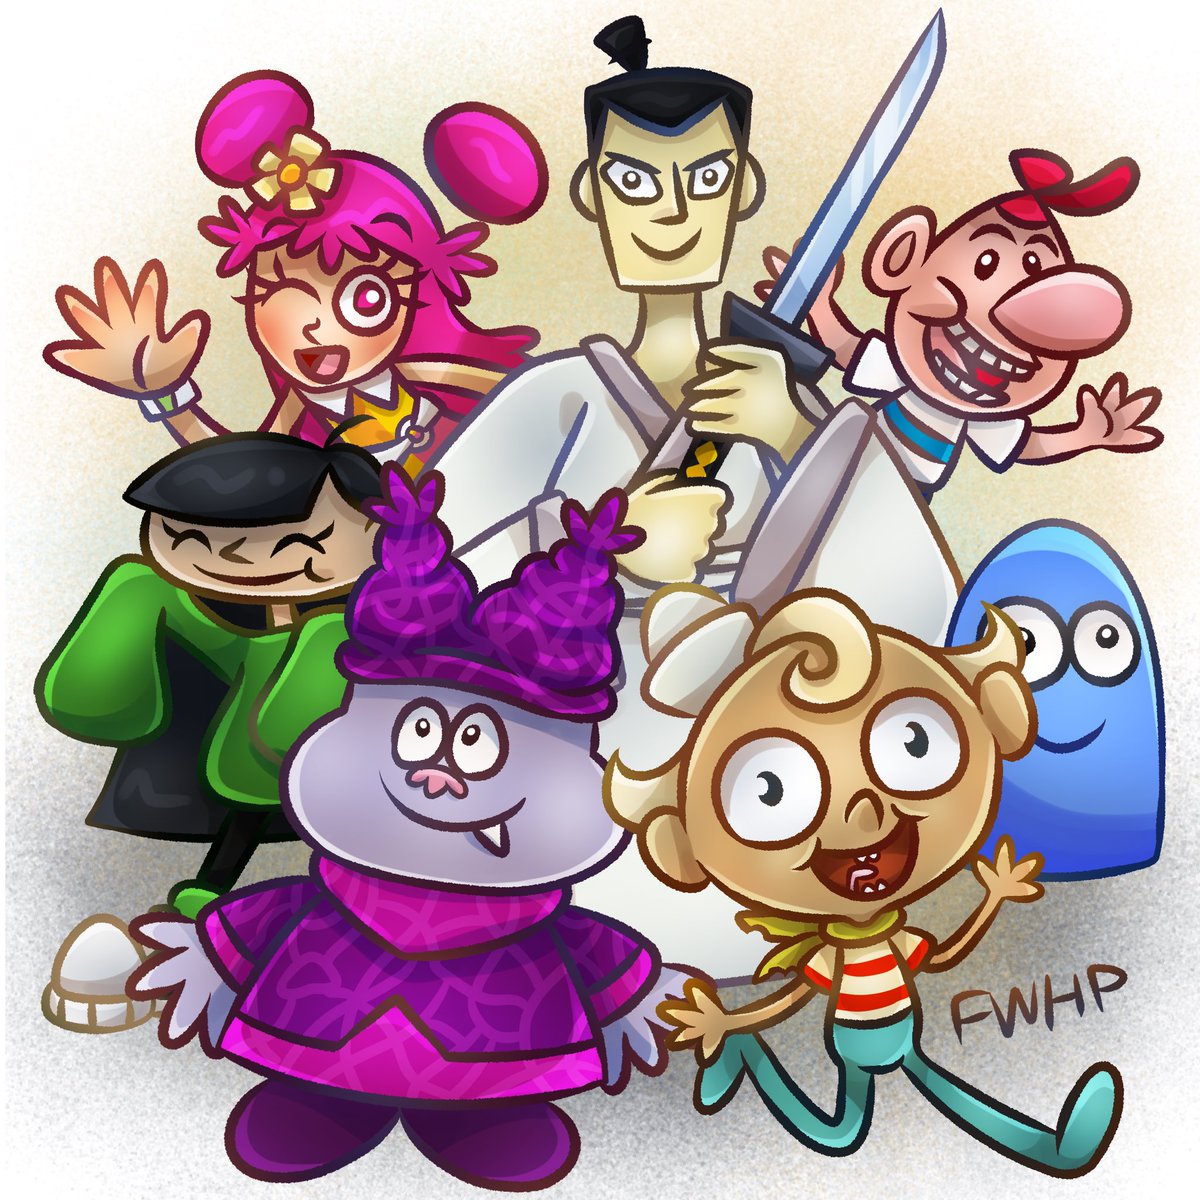 😁My Favorite Cartoon Network Cartoons from the 2000s😁

#CartoonNetwork #CartoonNetwork30 #CN30 

#thegrimadventuresofbillyandmandy #fostershomeforimaginaryfriends #hihipuffyamiyumi #codenamekidsnextdoor #themarvelousmisadventuresofflapjack  #SamuraiJack #Chowder